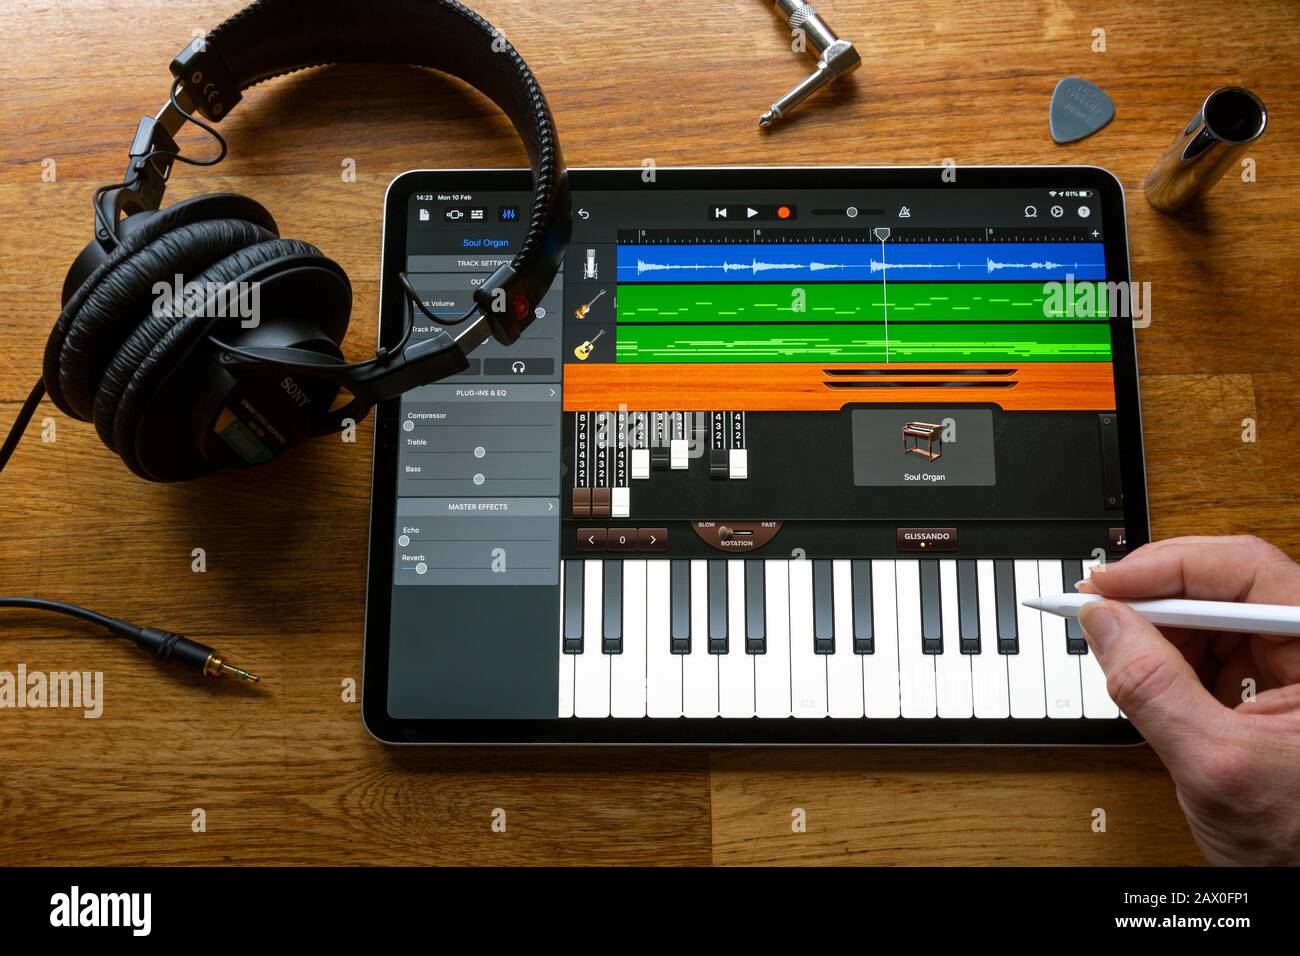 Bath, Royaume-Uni - 10 FÉVRIER 2020 : application de fabrication de musique GarageBand utilisée pour composer une chanson sur un Apple iPad Pro dans un environnement domestique. Banque D'Images